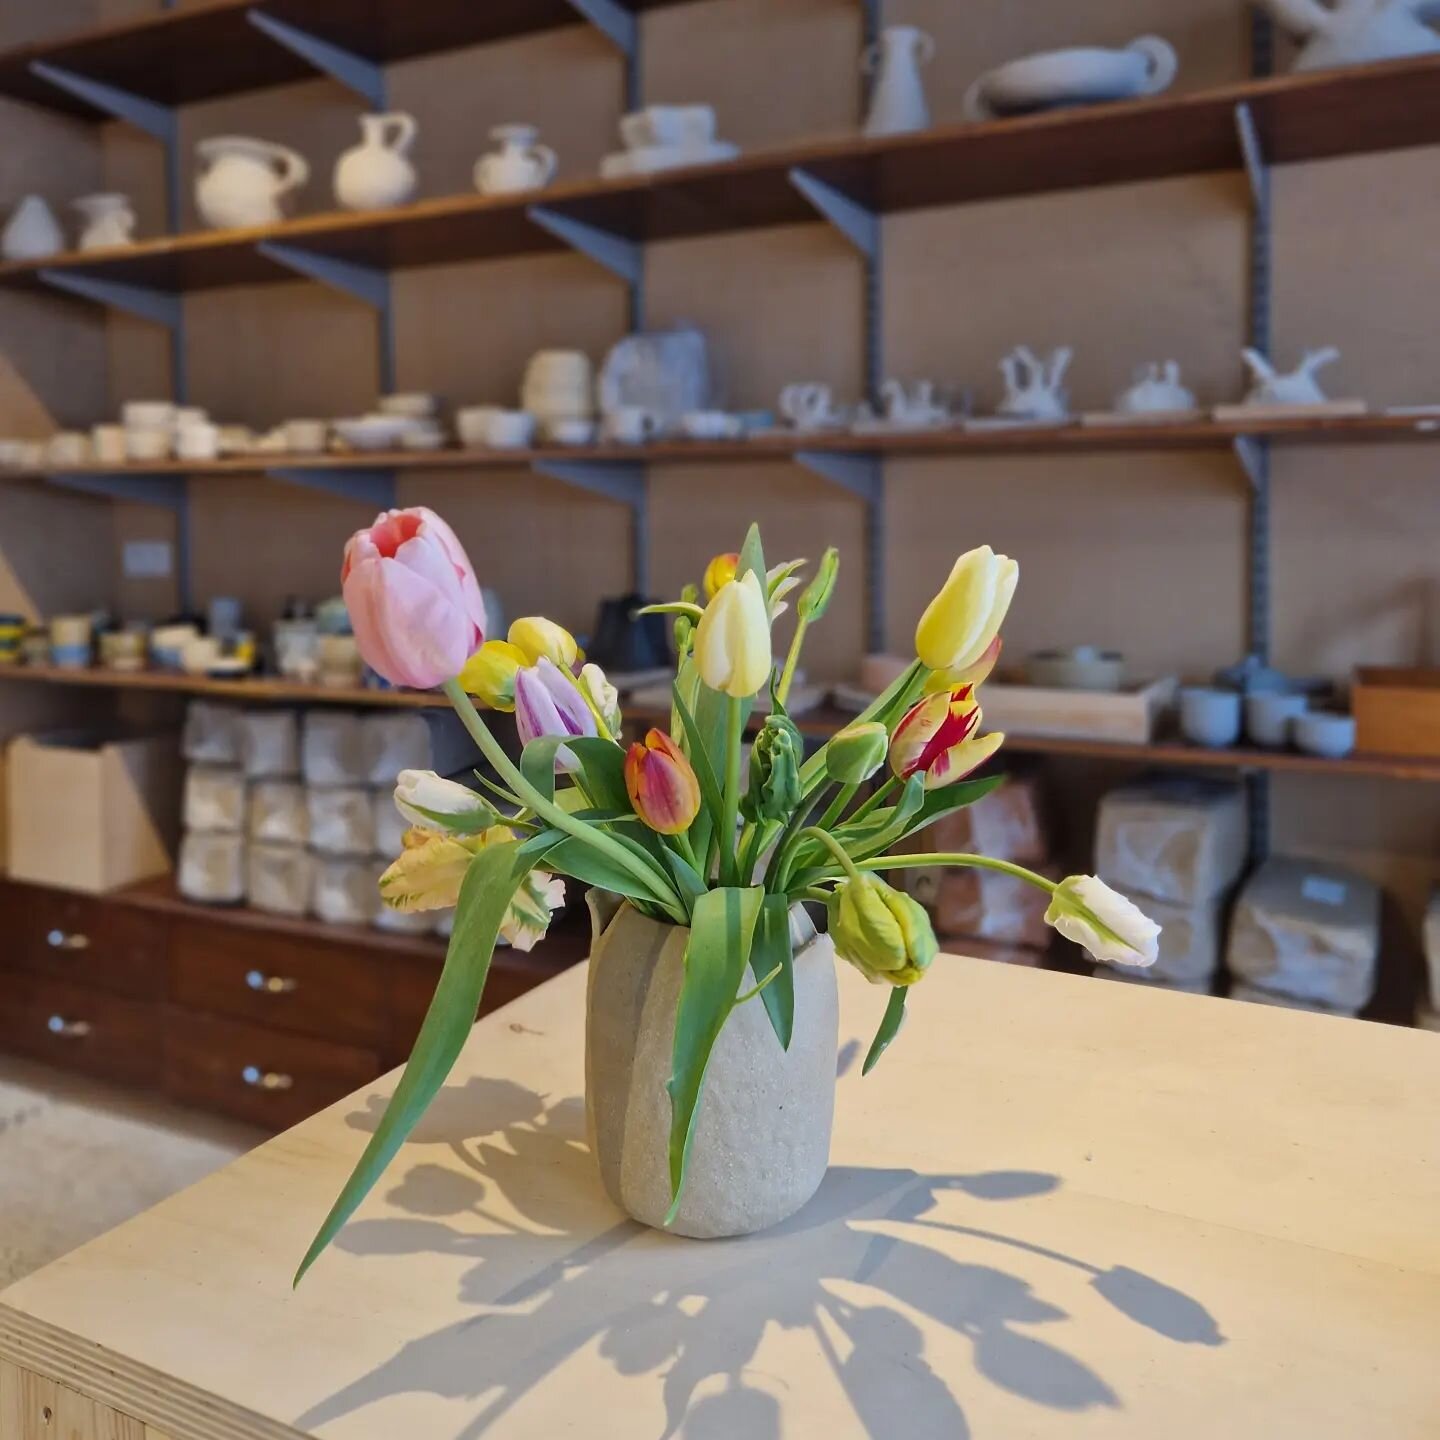 Quand Pascale passe &agrave; l'atelier c'est toujours plus joli apr&egrave;s 🤩
Merci @cyclefarmfleurs 

#flowers #vase #bouquet #tulipes #handmade #artisanat #decoration #ceramique #atelieruccle #homedecoration